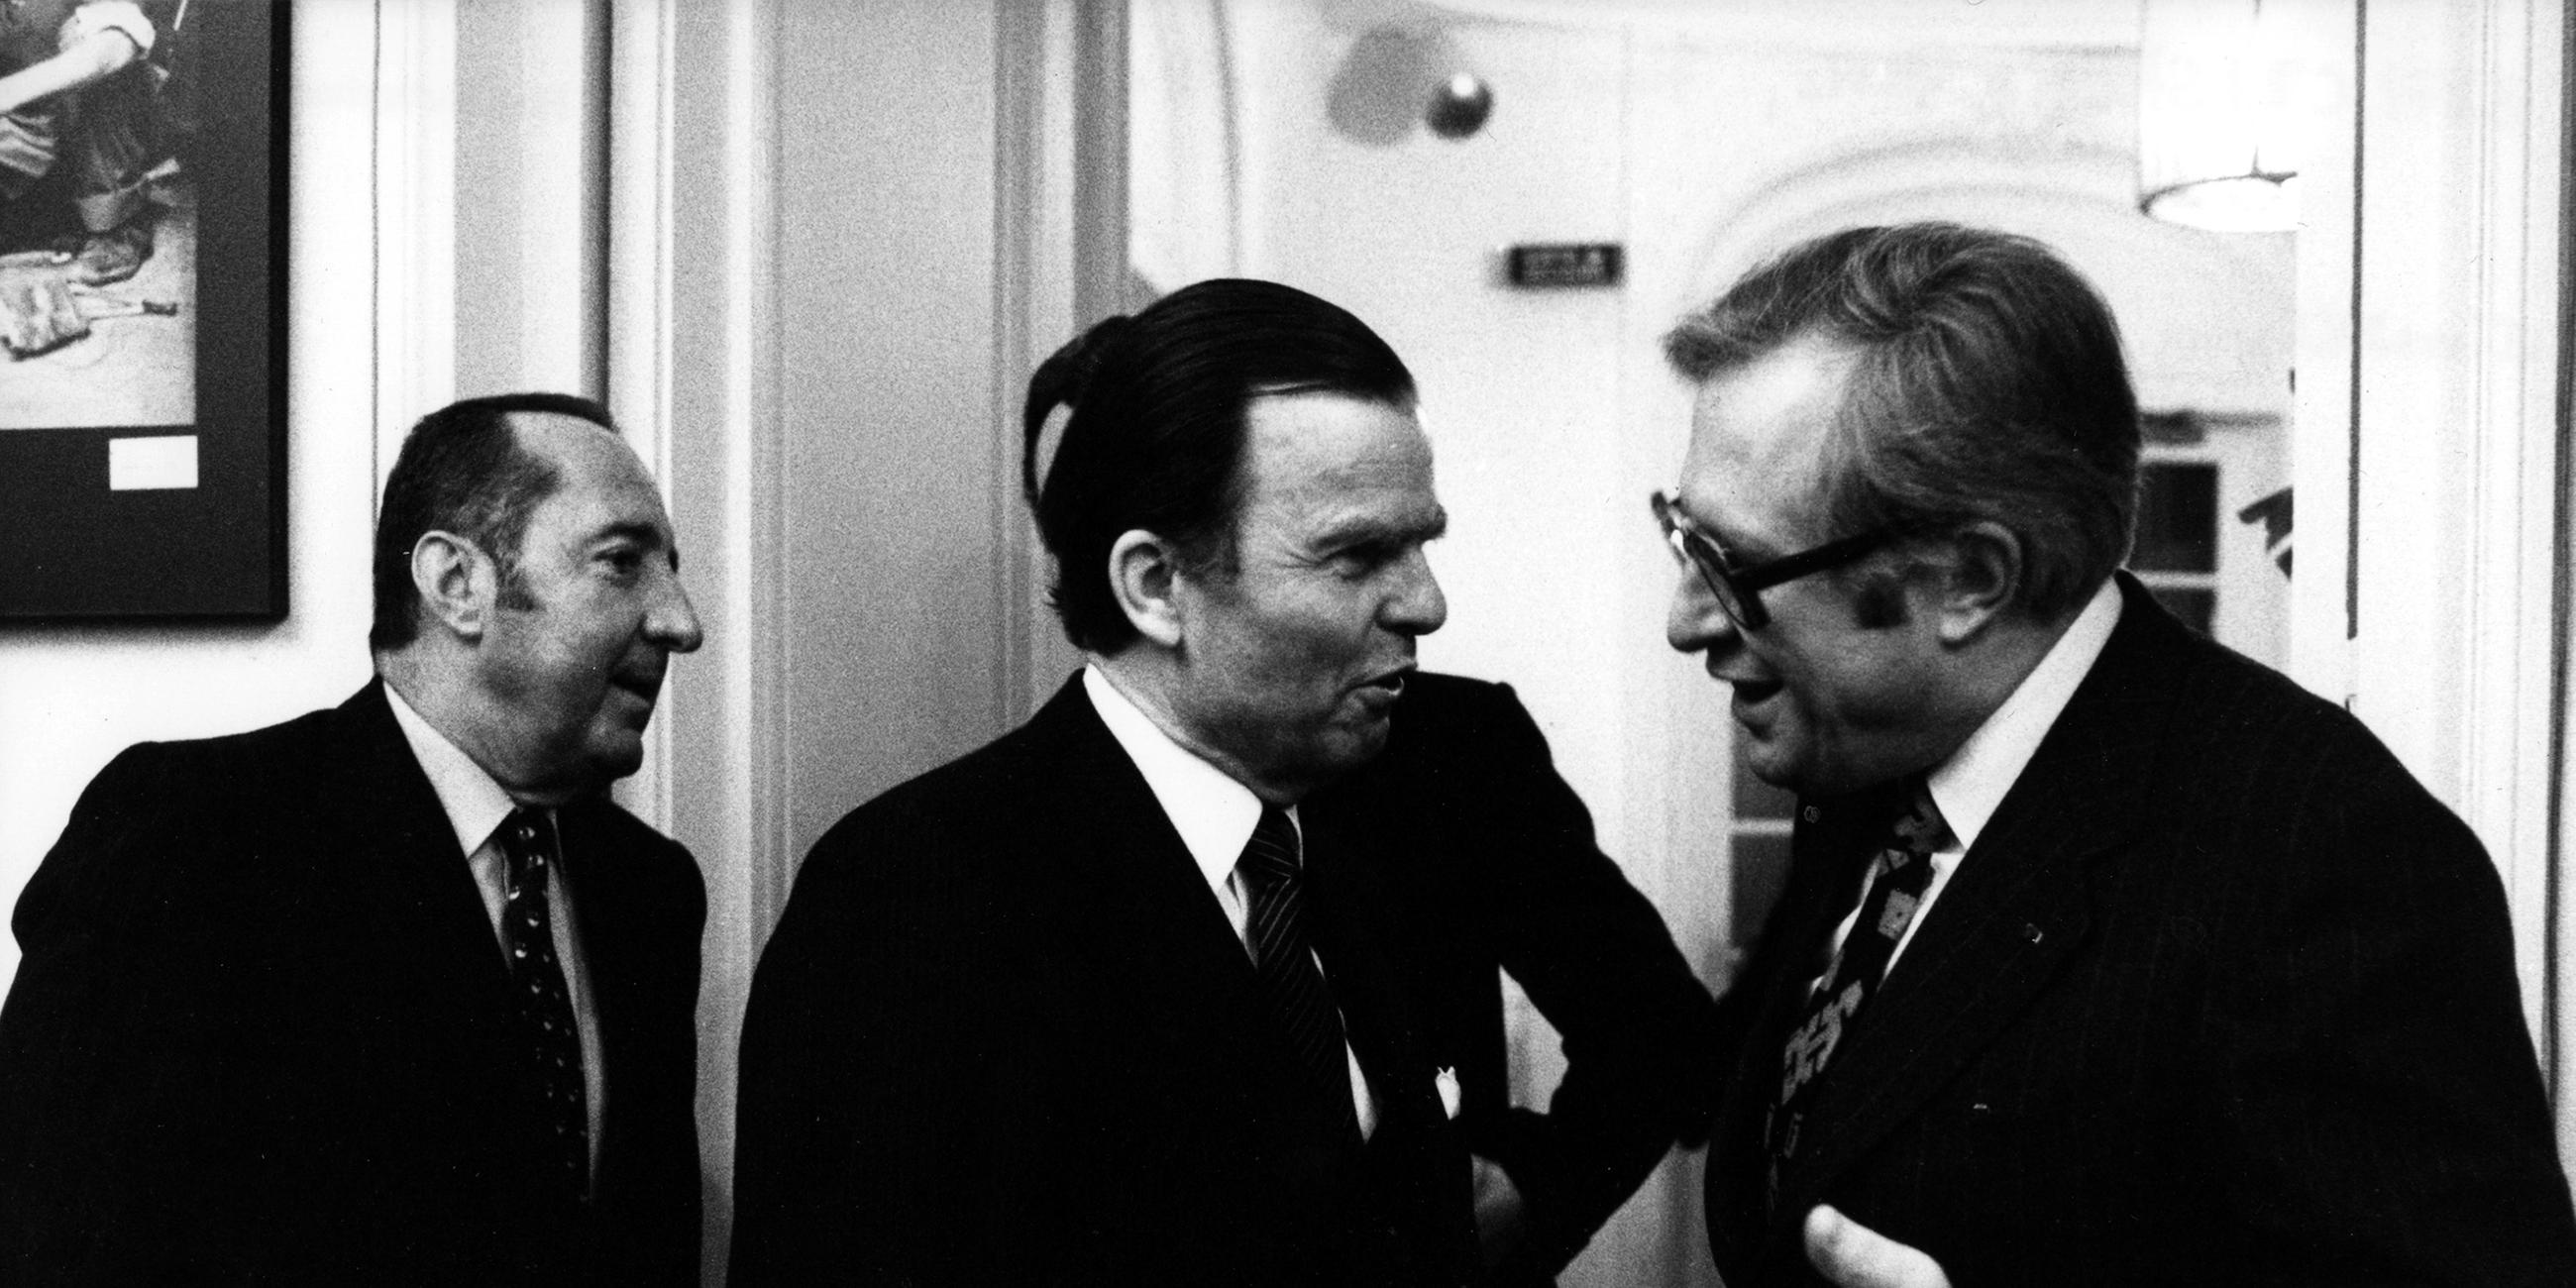 Der Publizist Peter Scholl-Latour, Karl-Günther von Hase und der damalige Ministerpräsident von Rheinland-Pfalz, Dr. Bernhard Vogel bei der Einweihung des ZDF-Studios in Paris 1980